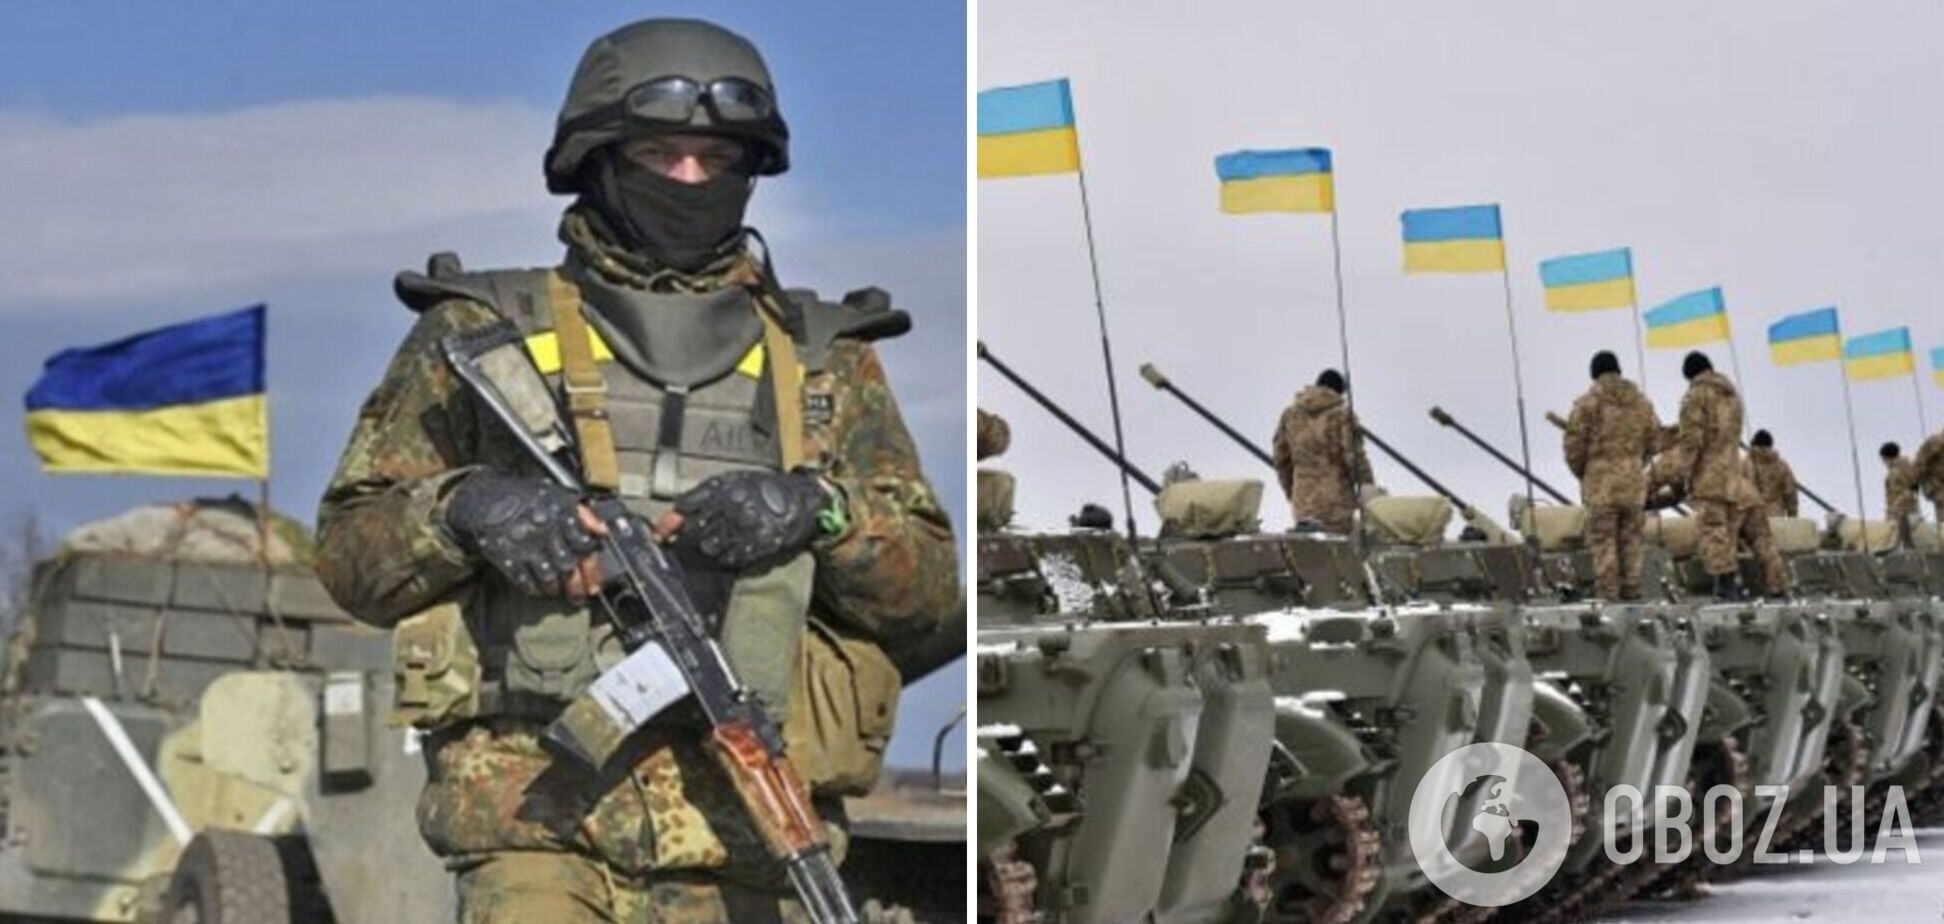 'Це робить нас слабшими': боєць ЗСУ поставив крапку у суперечках українців, чи мають всі чоловіки воювати. Відео